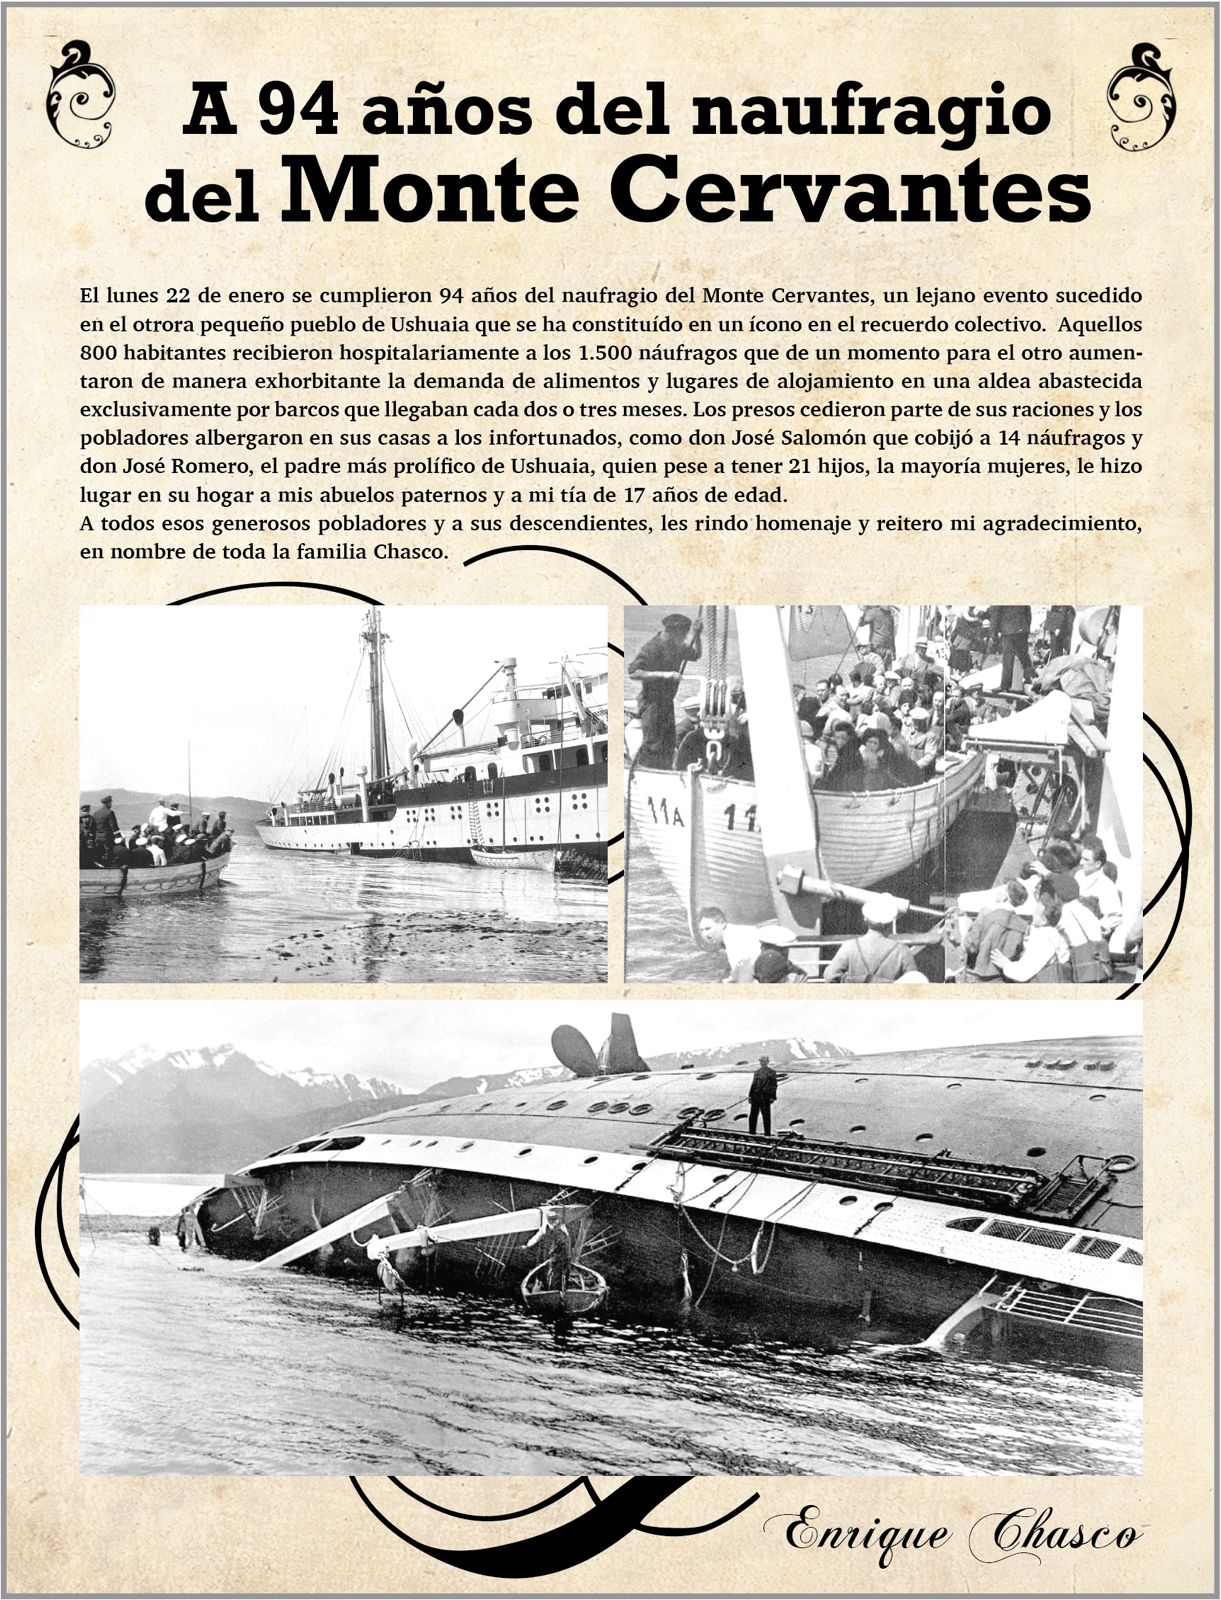 A 94 años del naufragio del Monte Cervantes